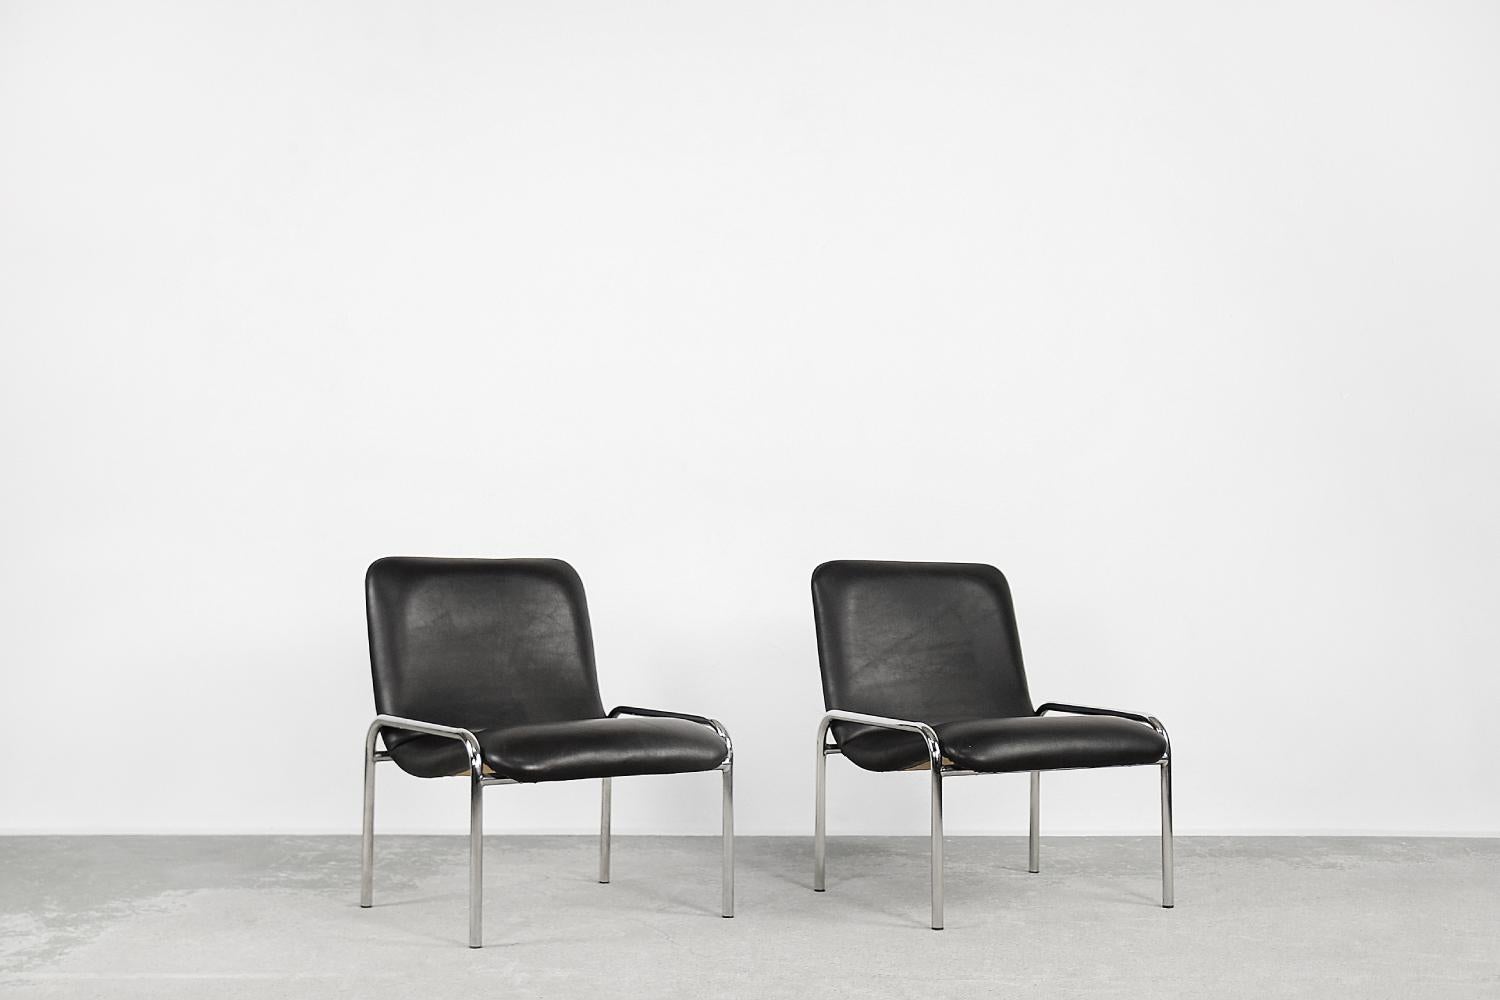 Cet ensemble de deux fauteuils a été fabriqué par la manufacture allemande Thonet dans les années 1970. Le cadre est en tube d'acier chromé. Les chaises sont fabriquées en contreplaqué et recouvertes de cuir synthétique noir. La forme minimaliste